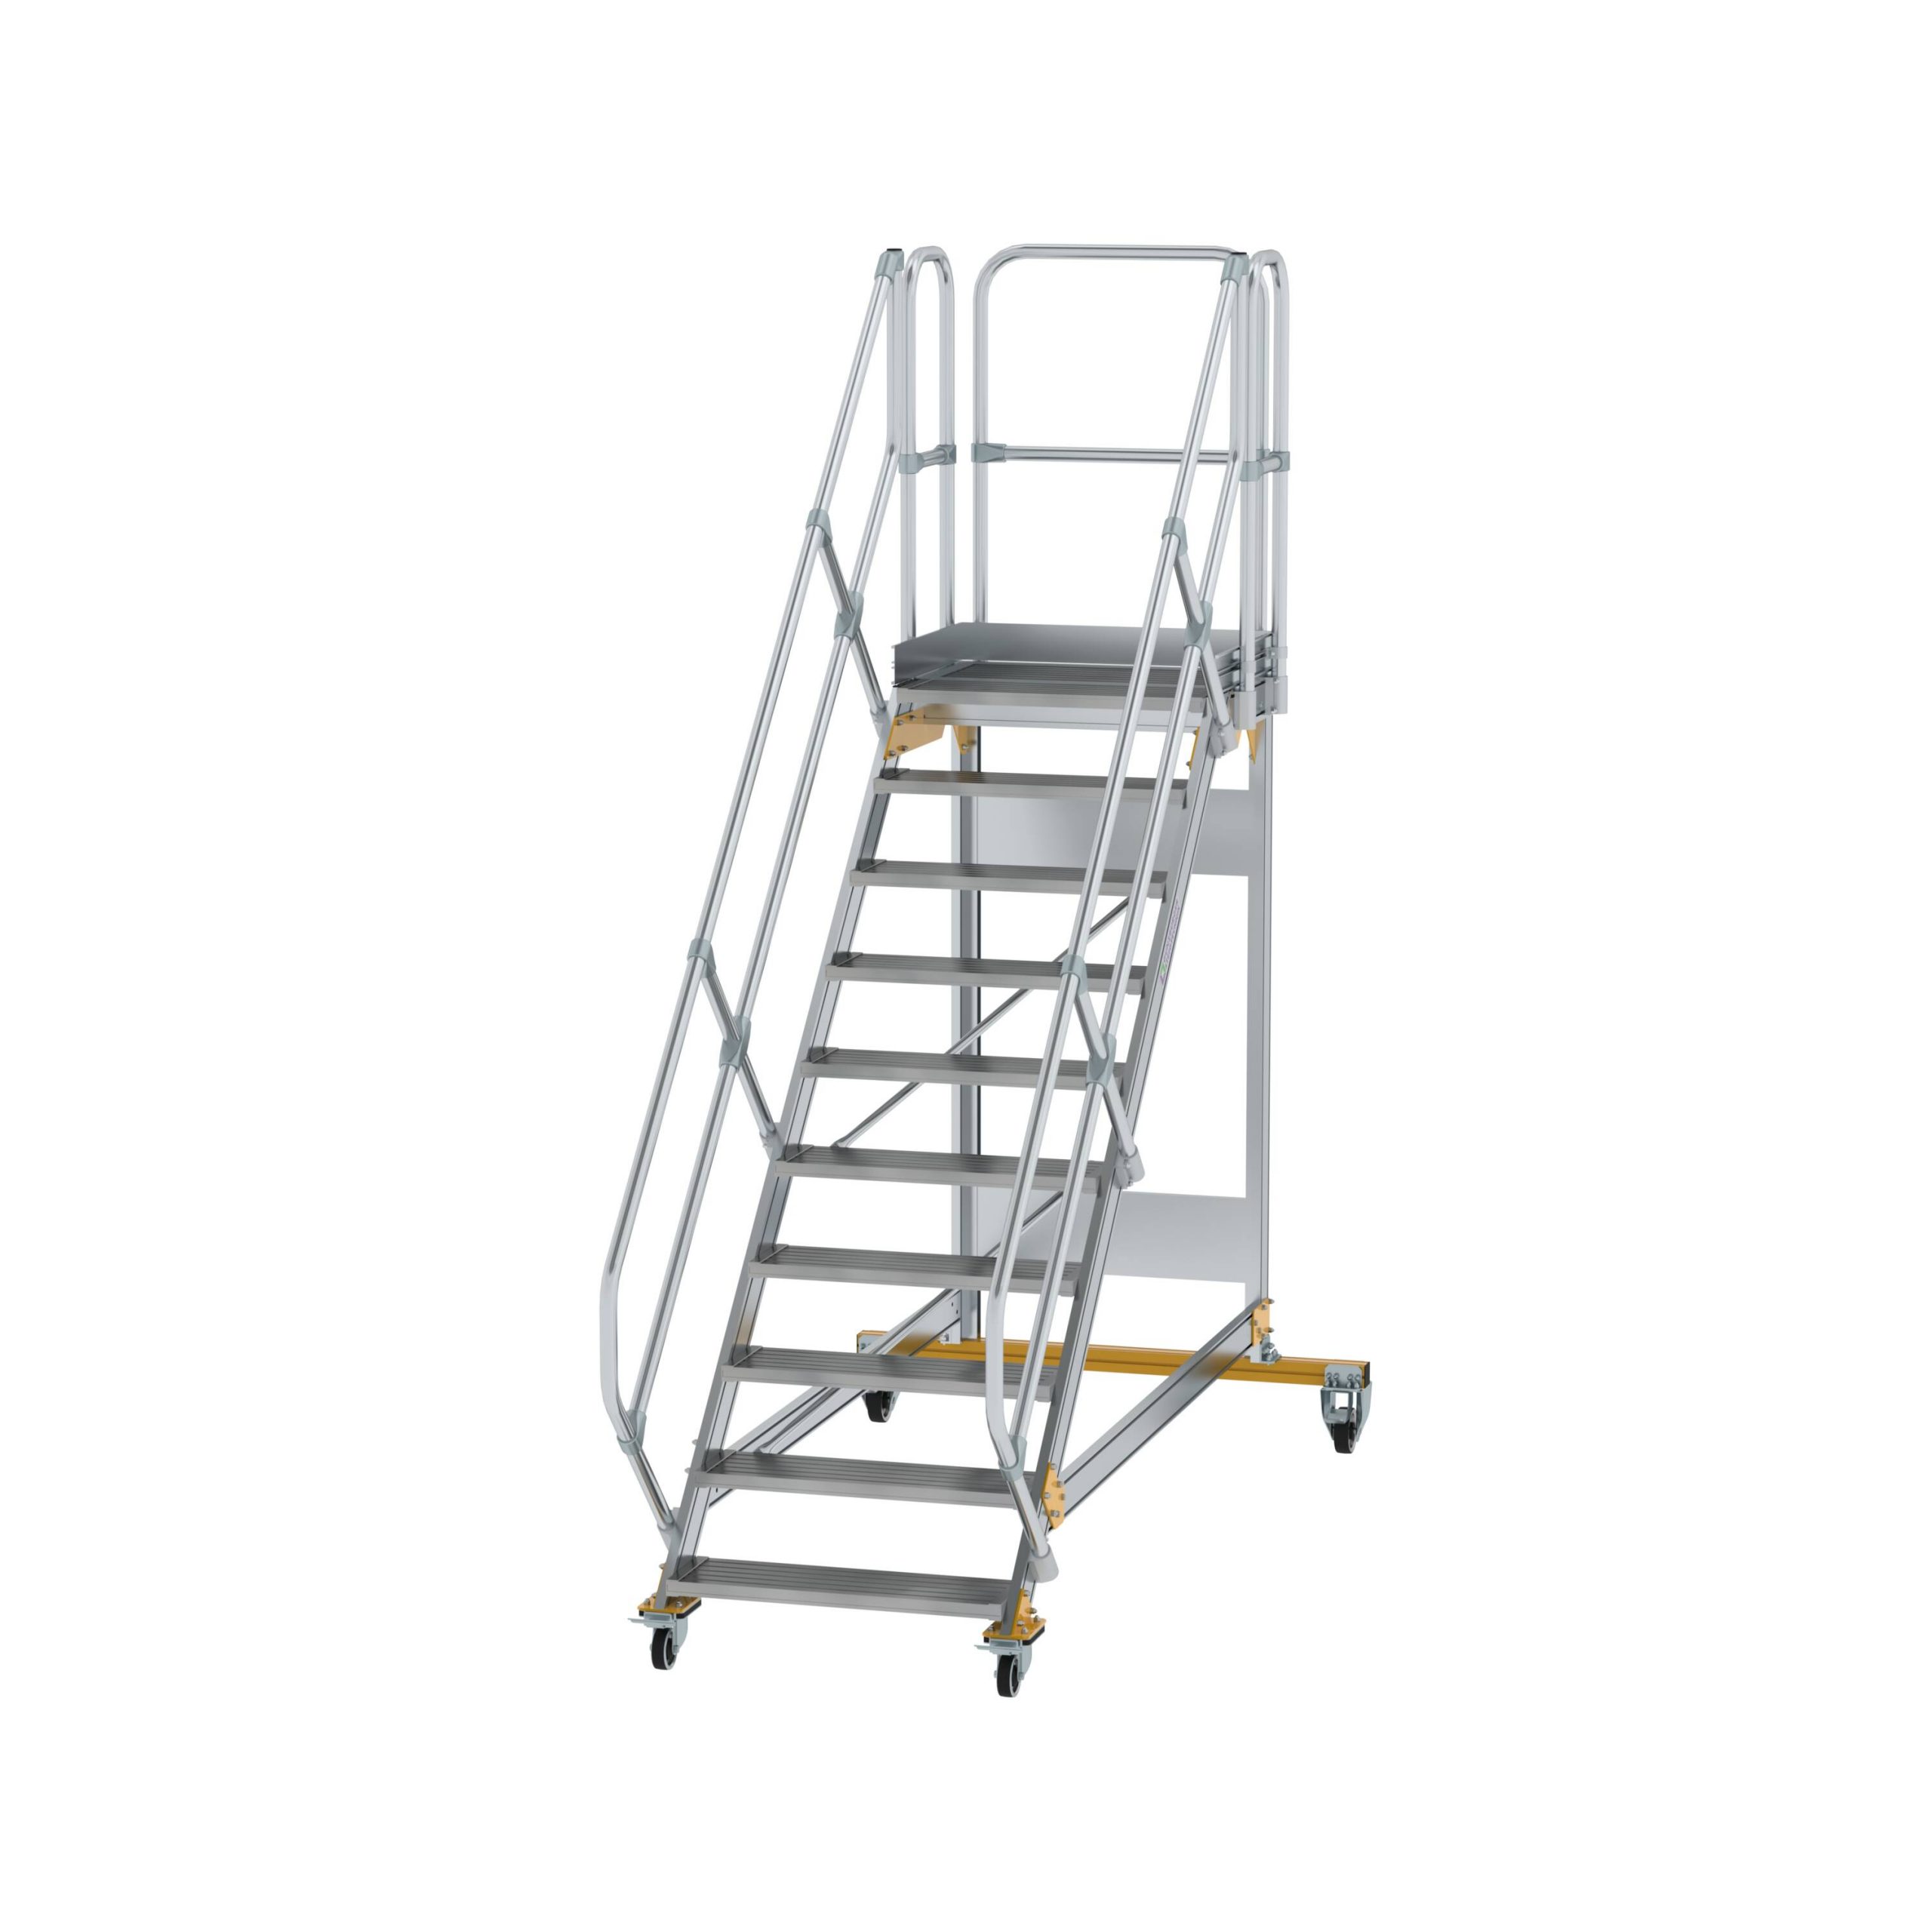 Mozgatható lépcsős dobogók: biztonság és hatékonyság feladatra szabva